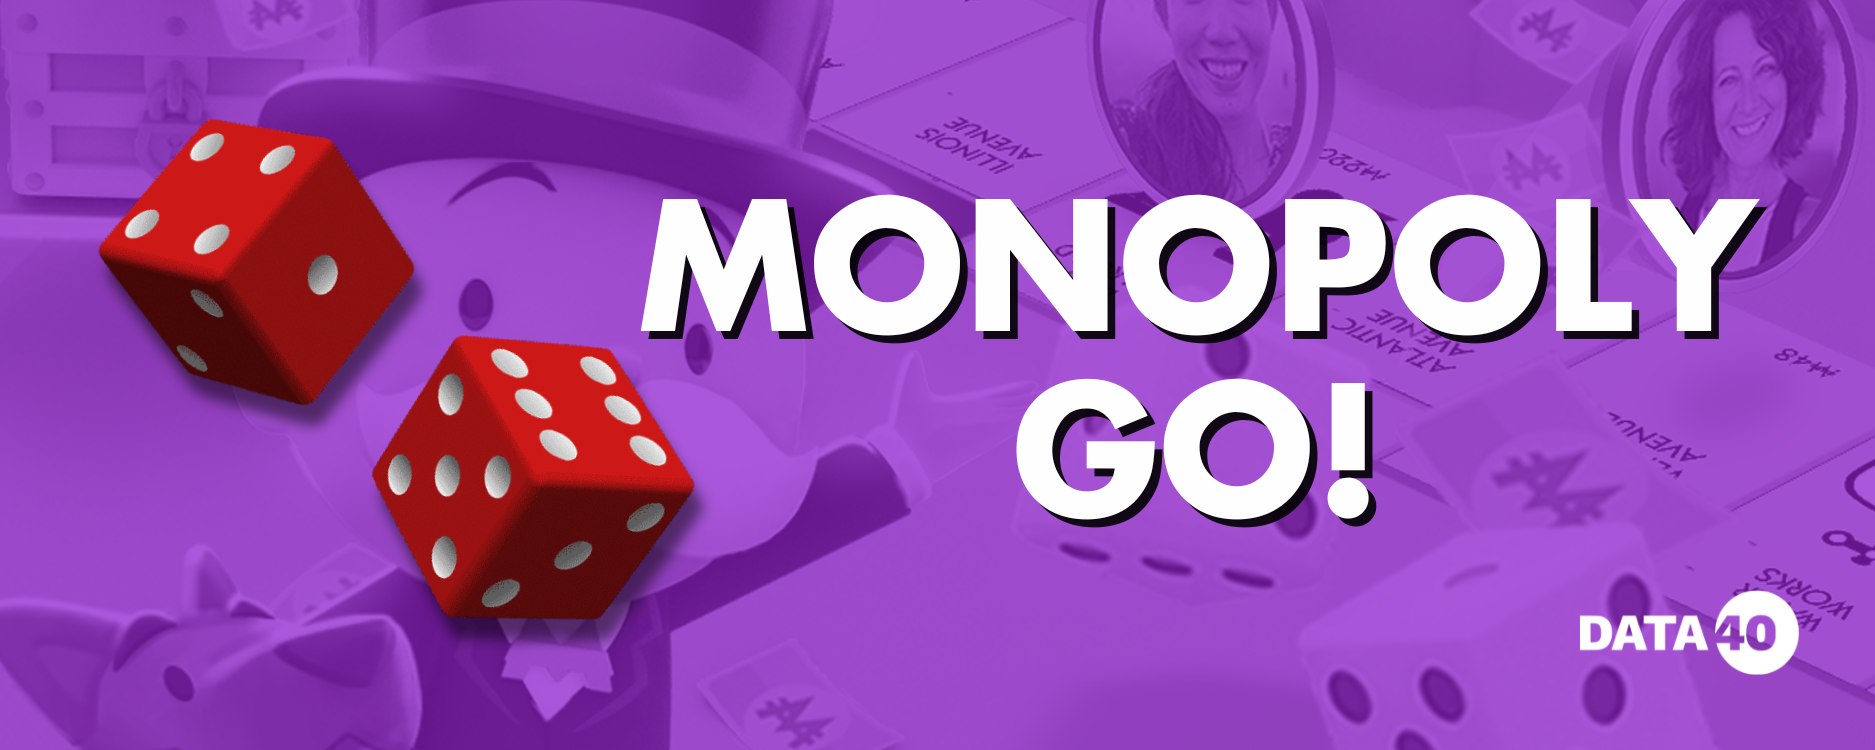 Monopoly GO!